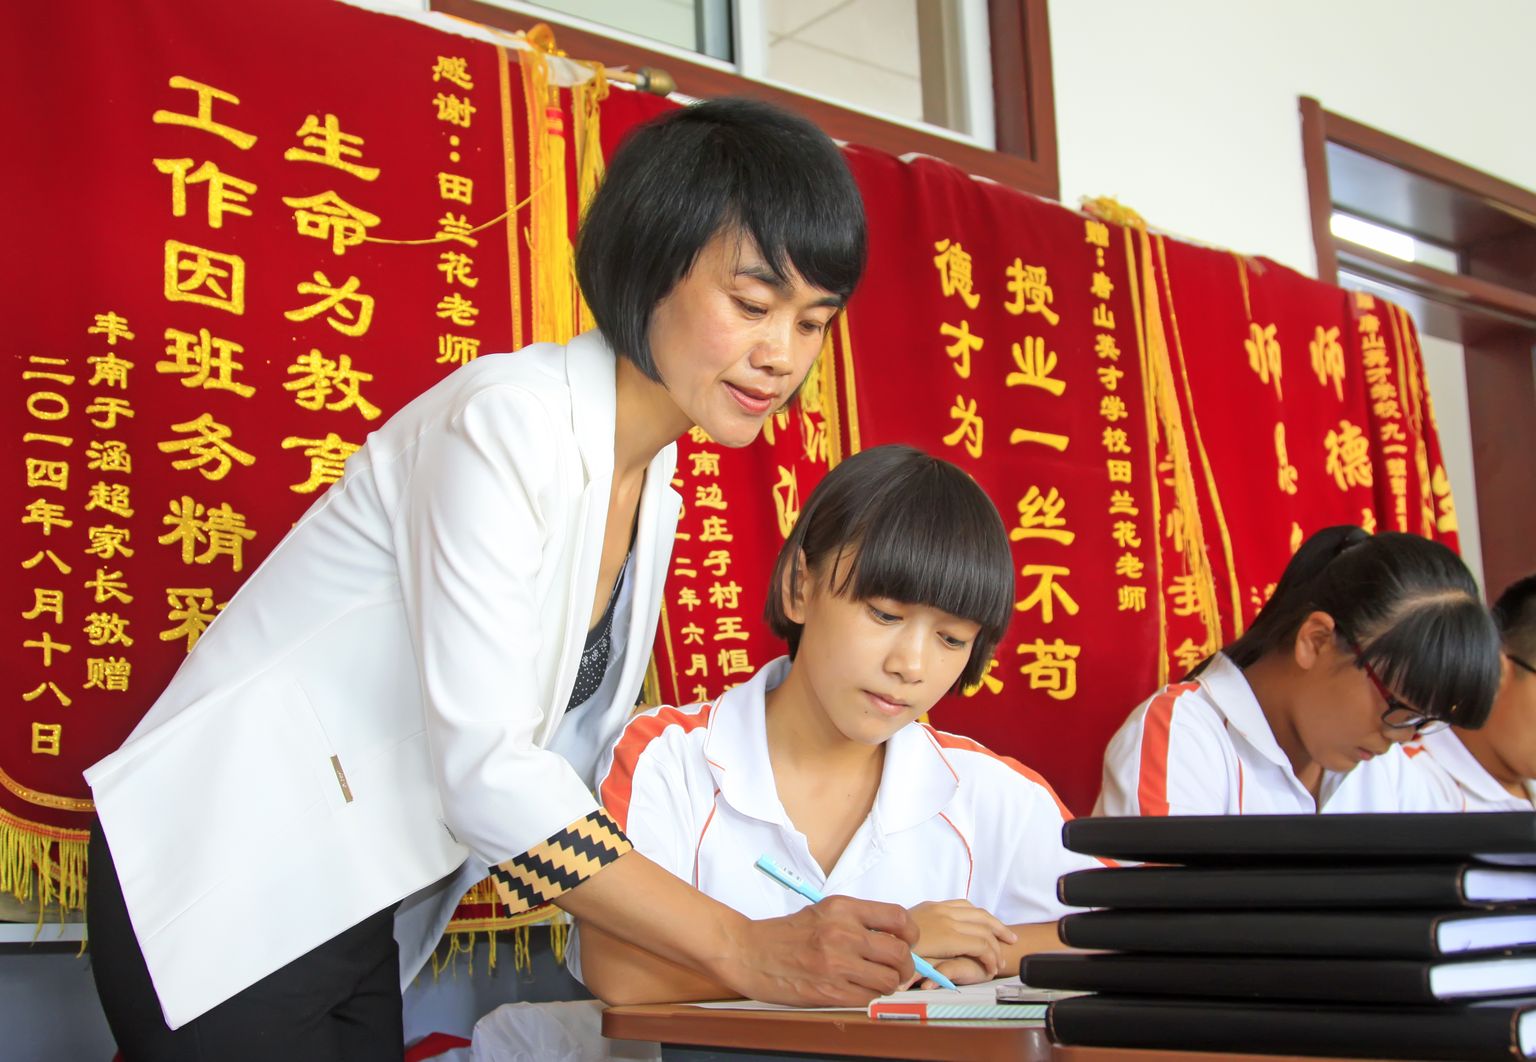 Skolotājas un skolēni Ķīnā. Attēls ilustratīvs.